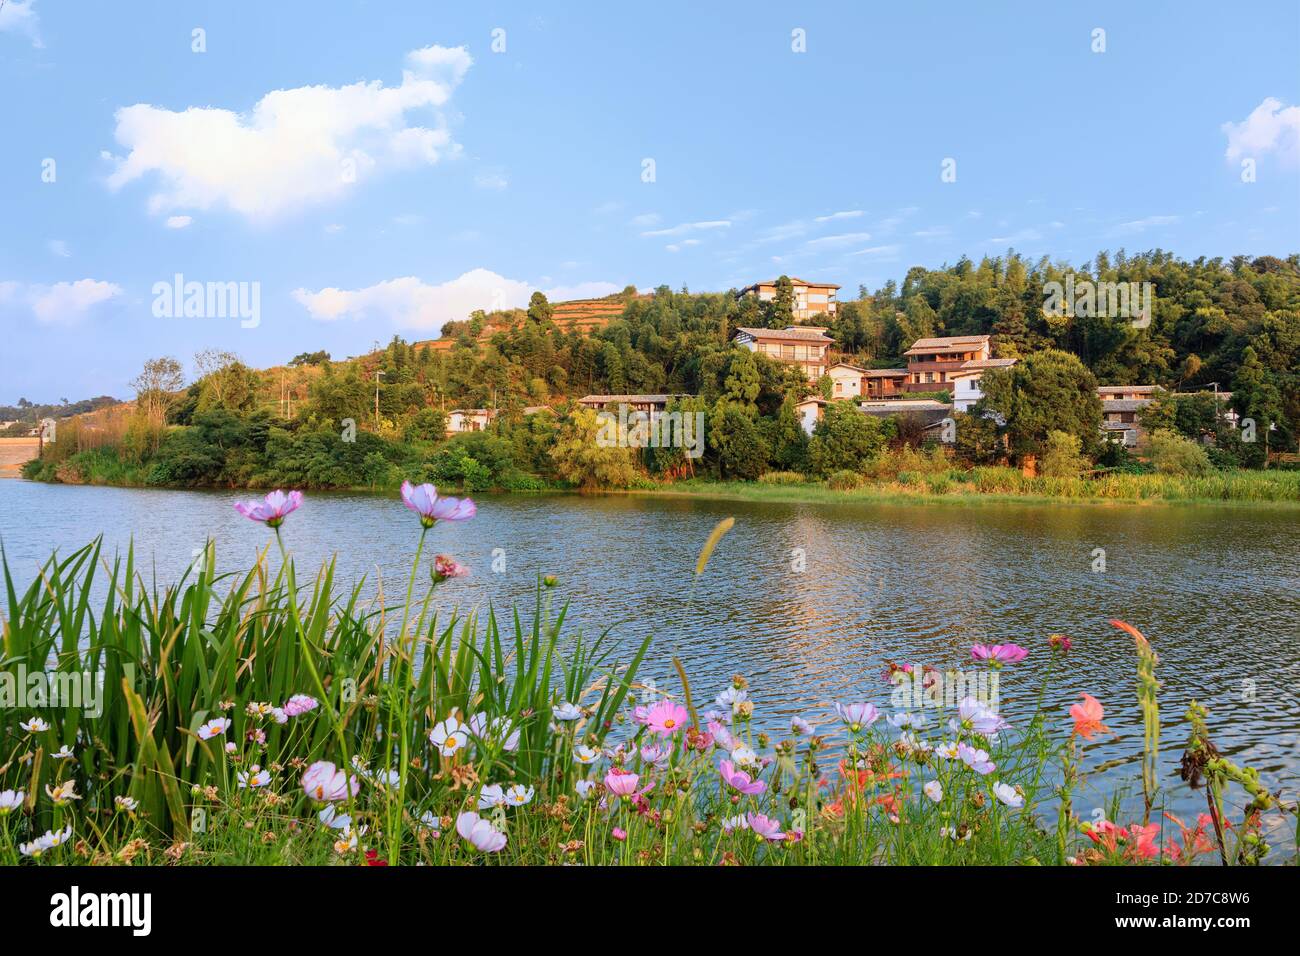 La montagne idyllique village chinois tranditionnel par rivière sur un magnifique après-midi d'été avec des arbres et des fleurs en fleur dans le sud de la Chine Banque D'Images